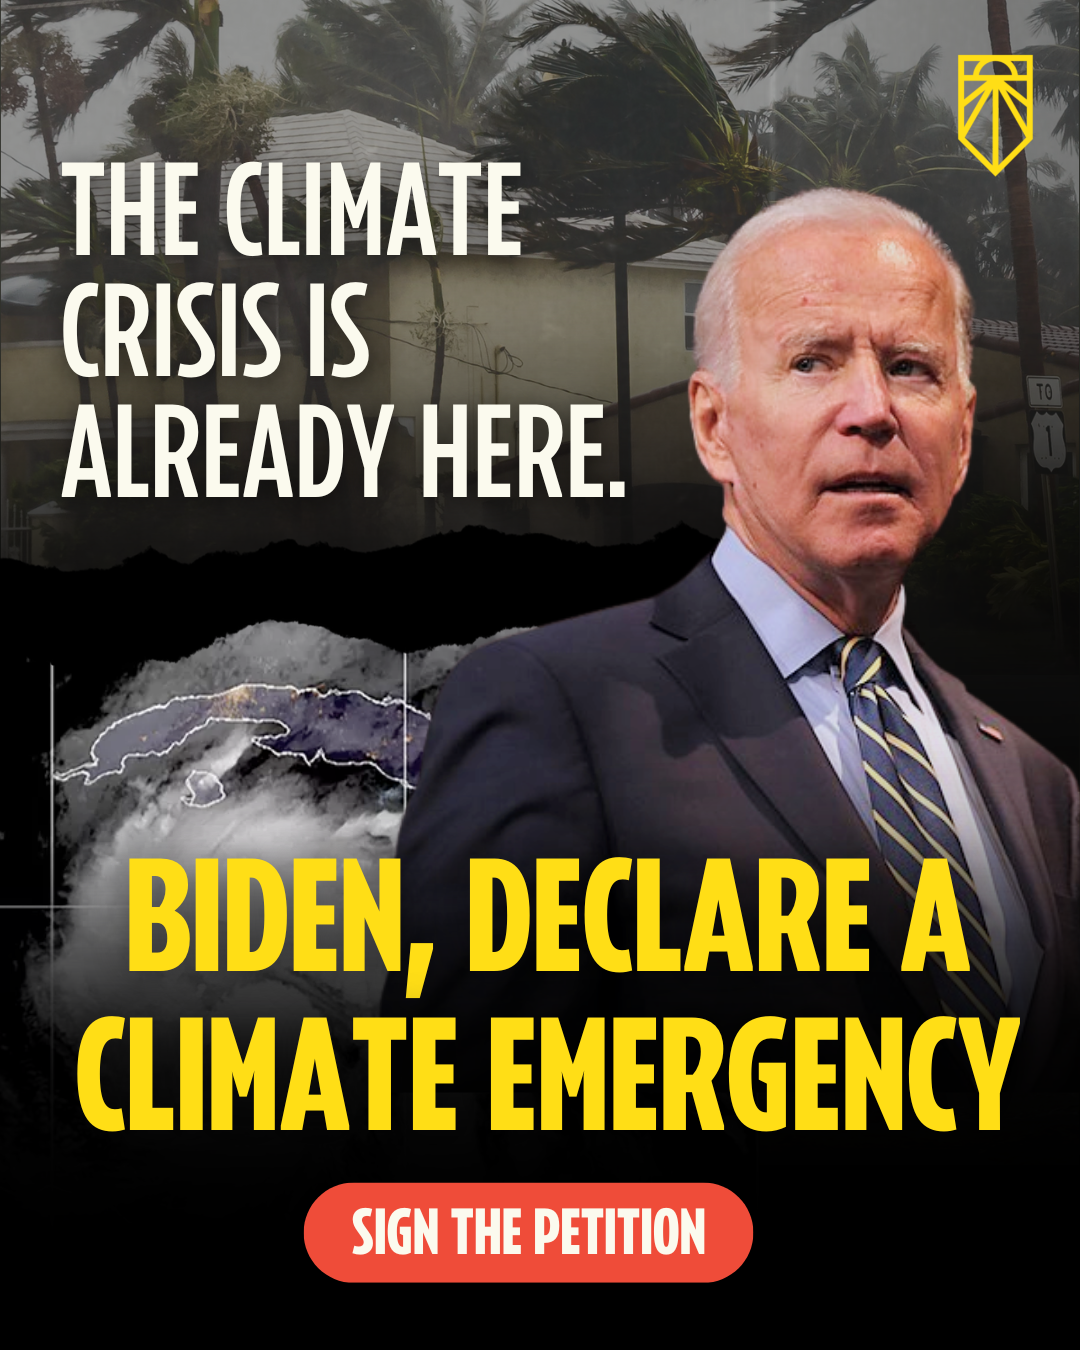 Климатический кризис уже наступил. Байден, объявить климатическую чрезвычайную ситуацию. Подпишите Петицию.